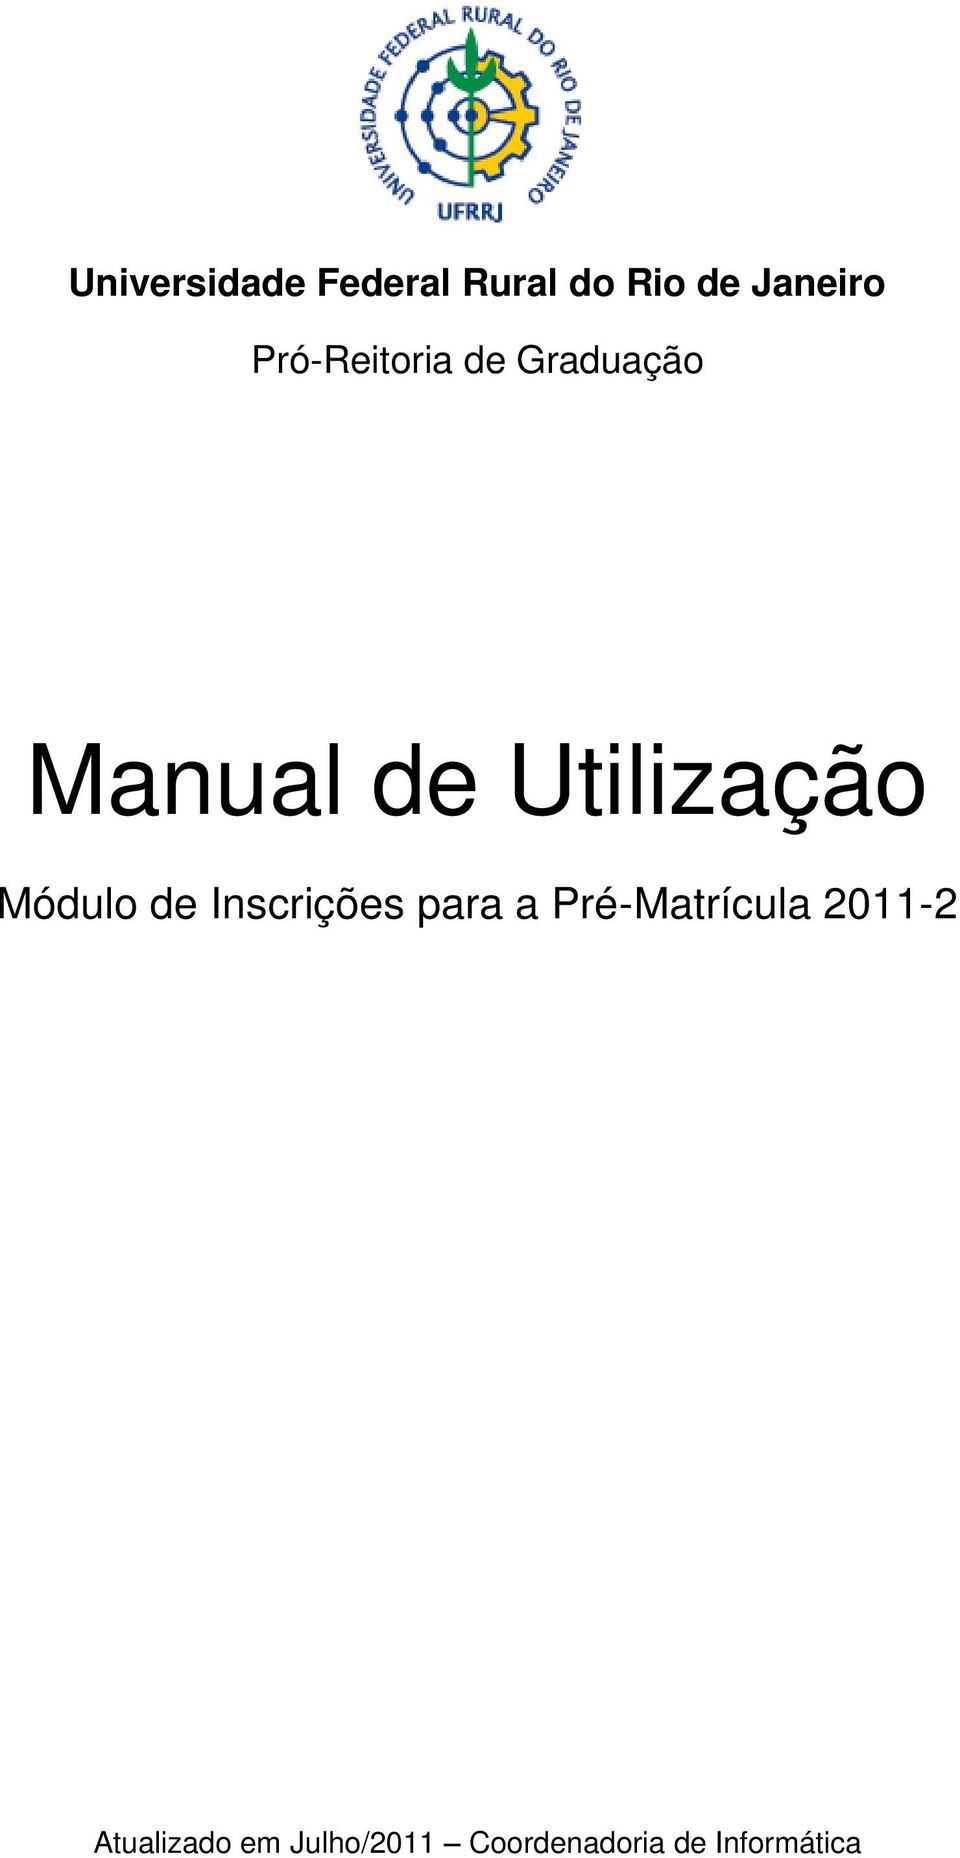 Módulo de Inscrições para a Pré-Matrícula 2011-2